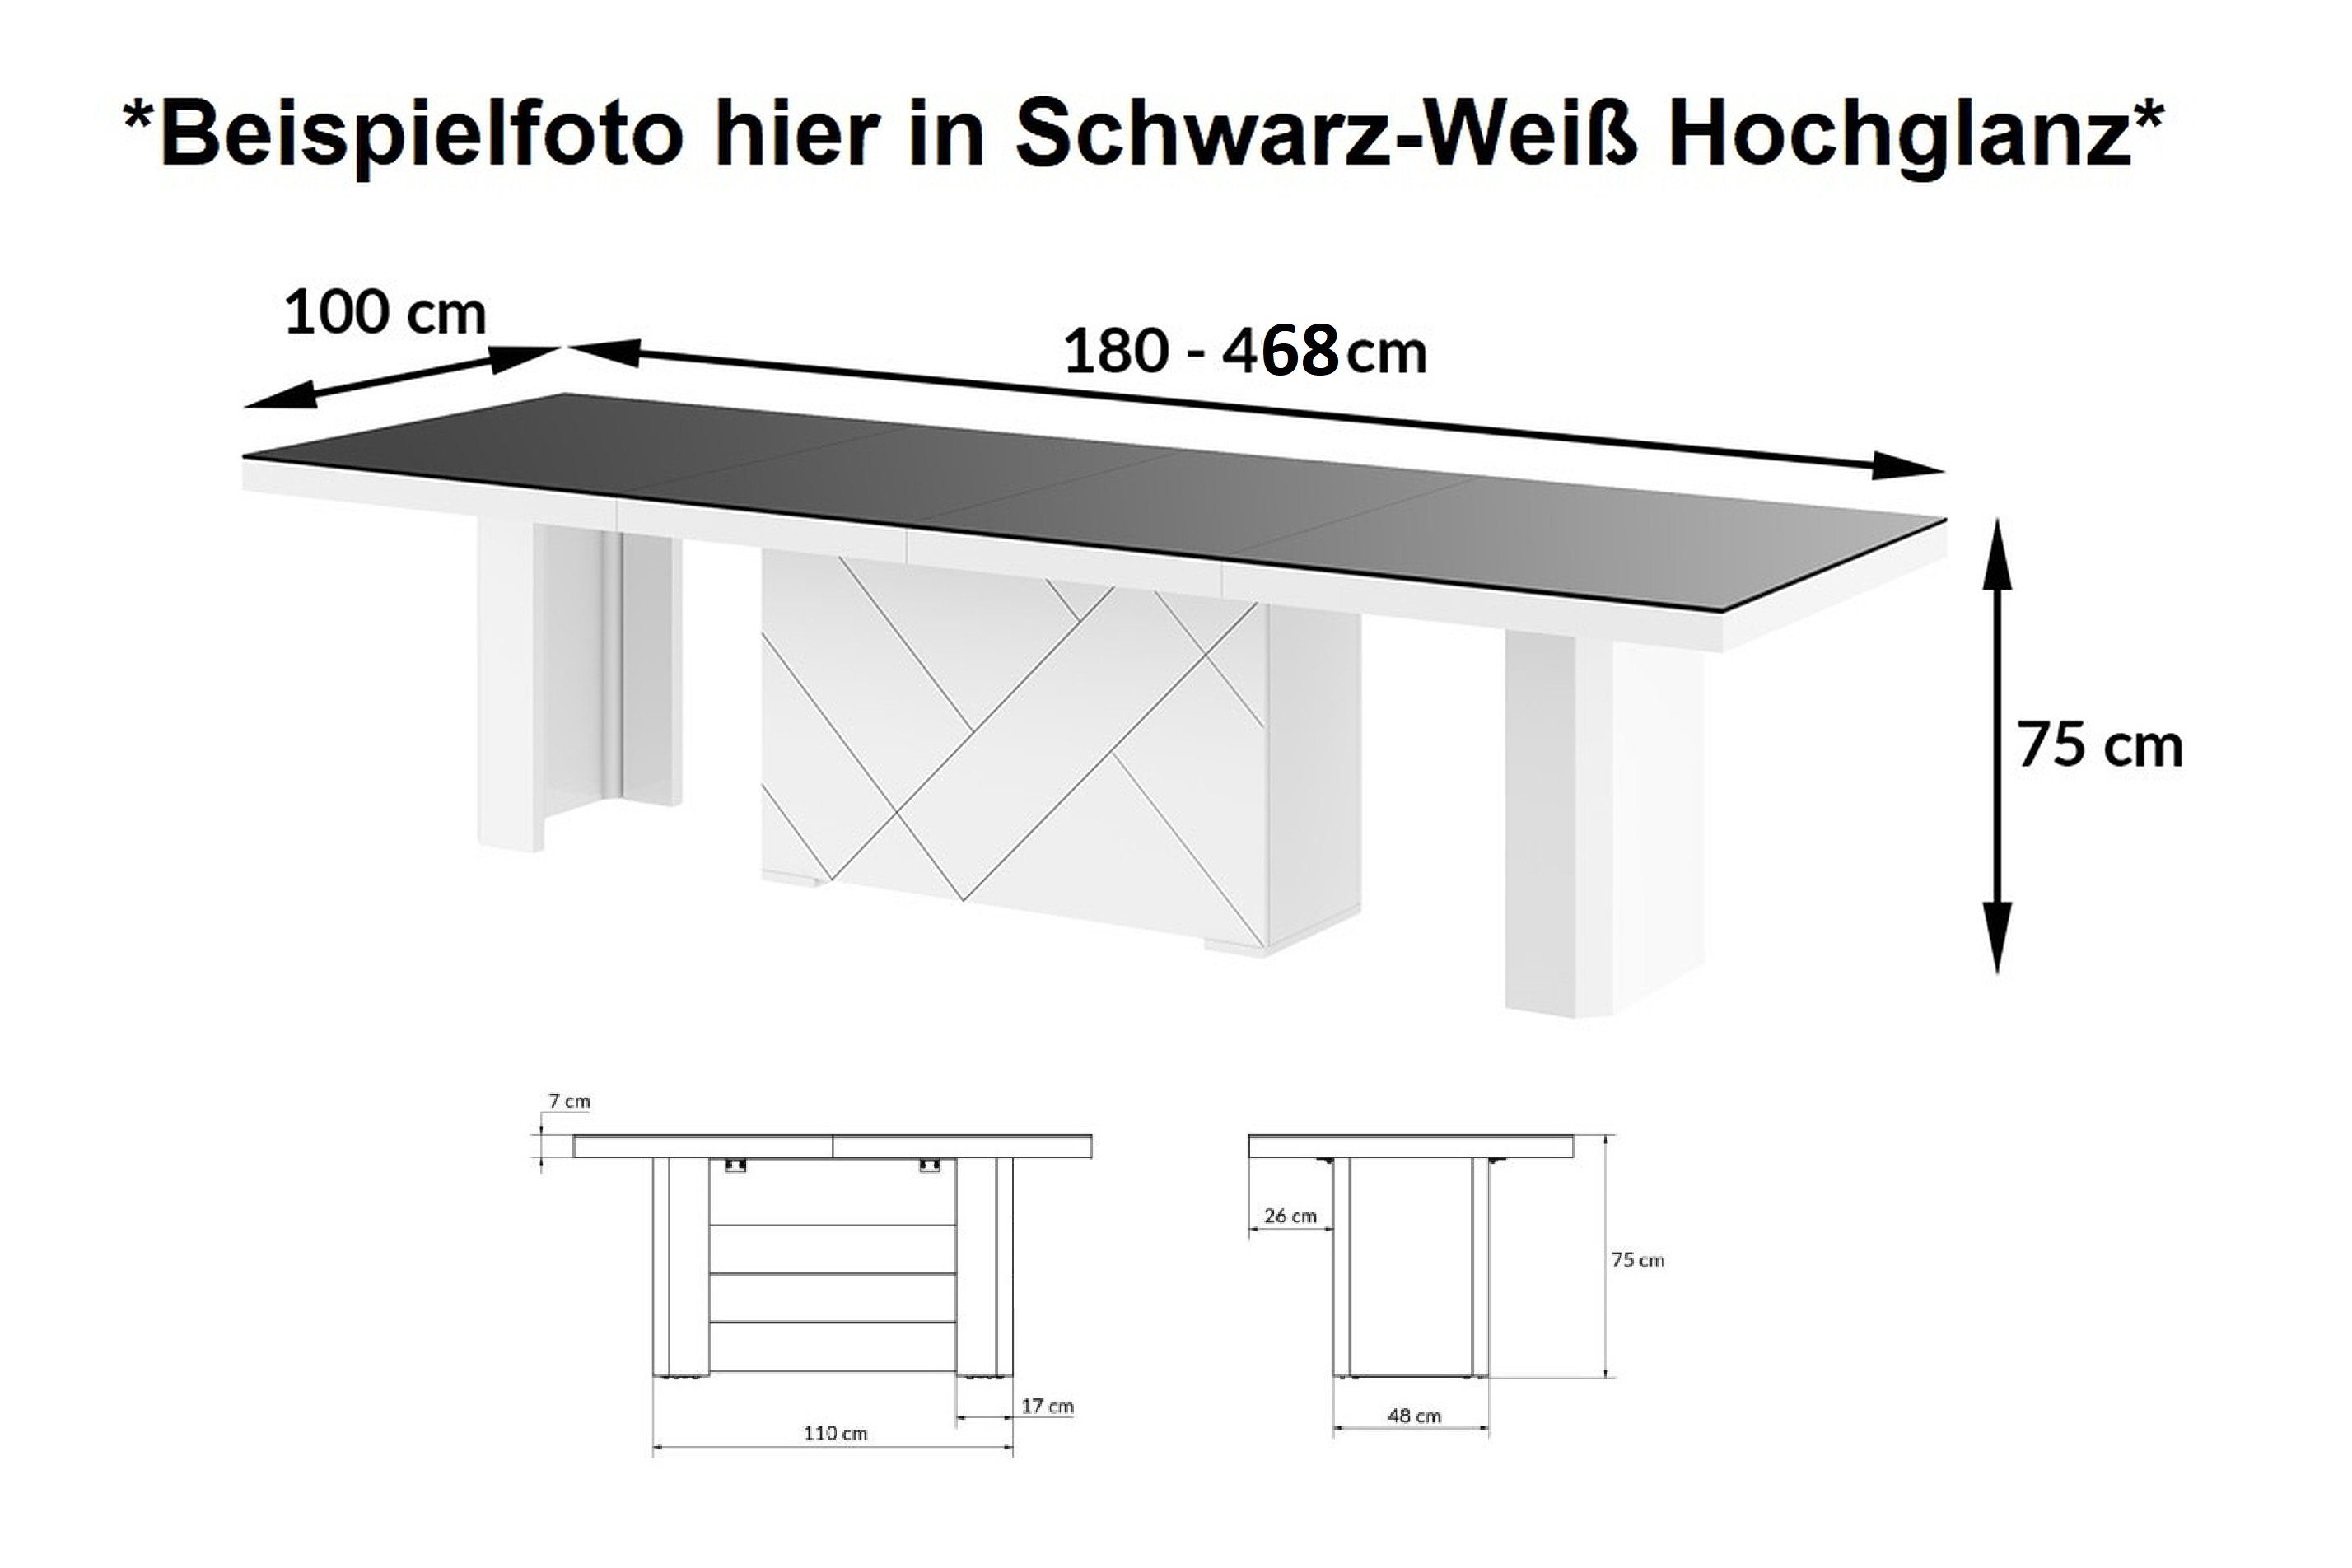 designimpex Esstisch Design HEK-111 XXL Hochglanz Schwarz Schwarz Weiß 468 bis Hochglanz Hochglanz ausziehbar 180 / Weiß cm 